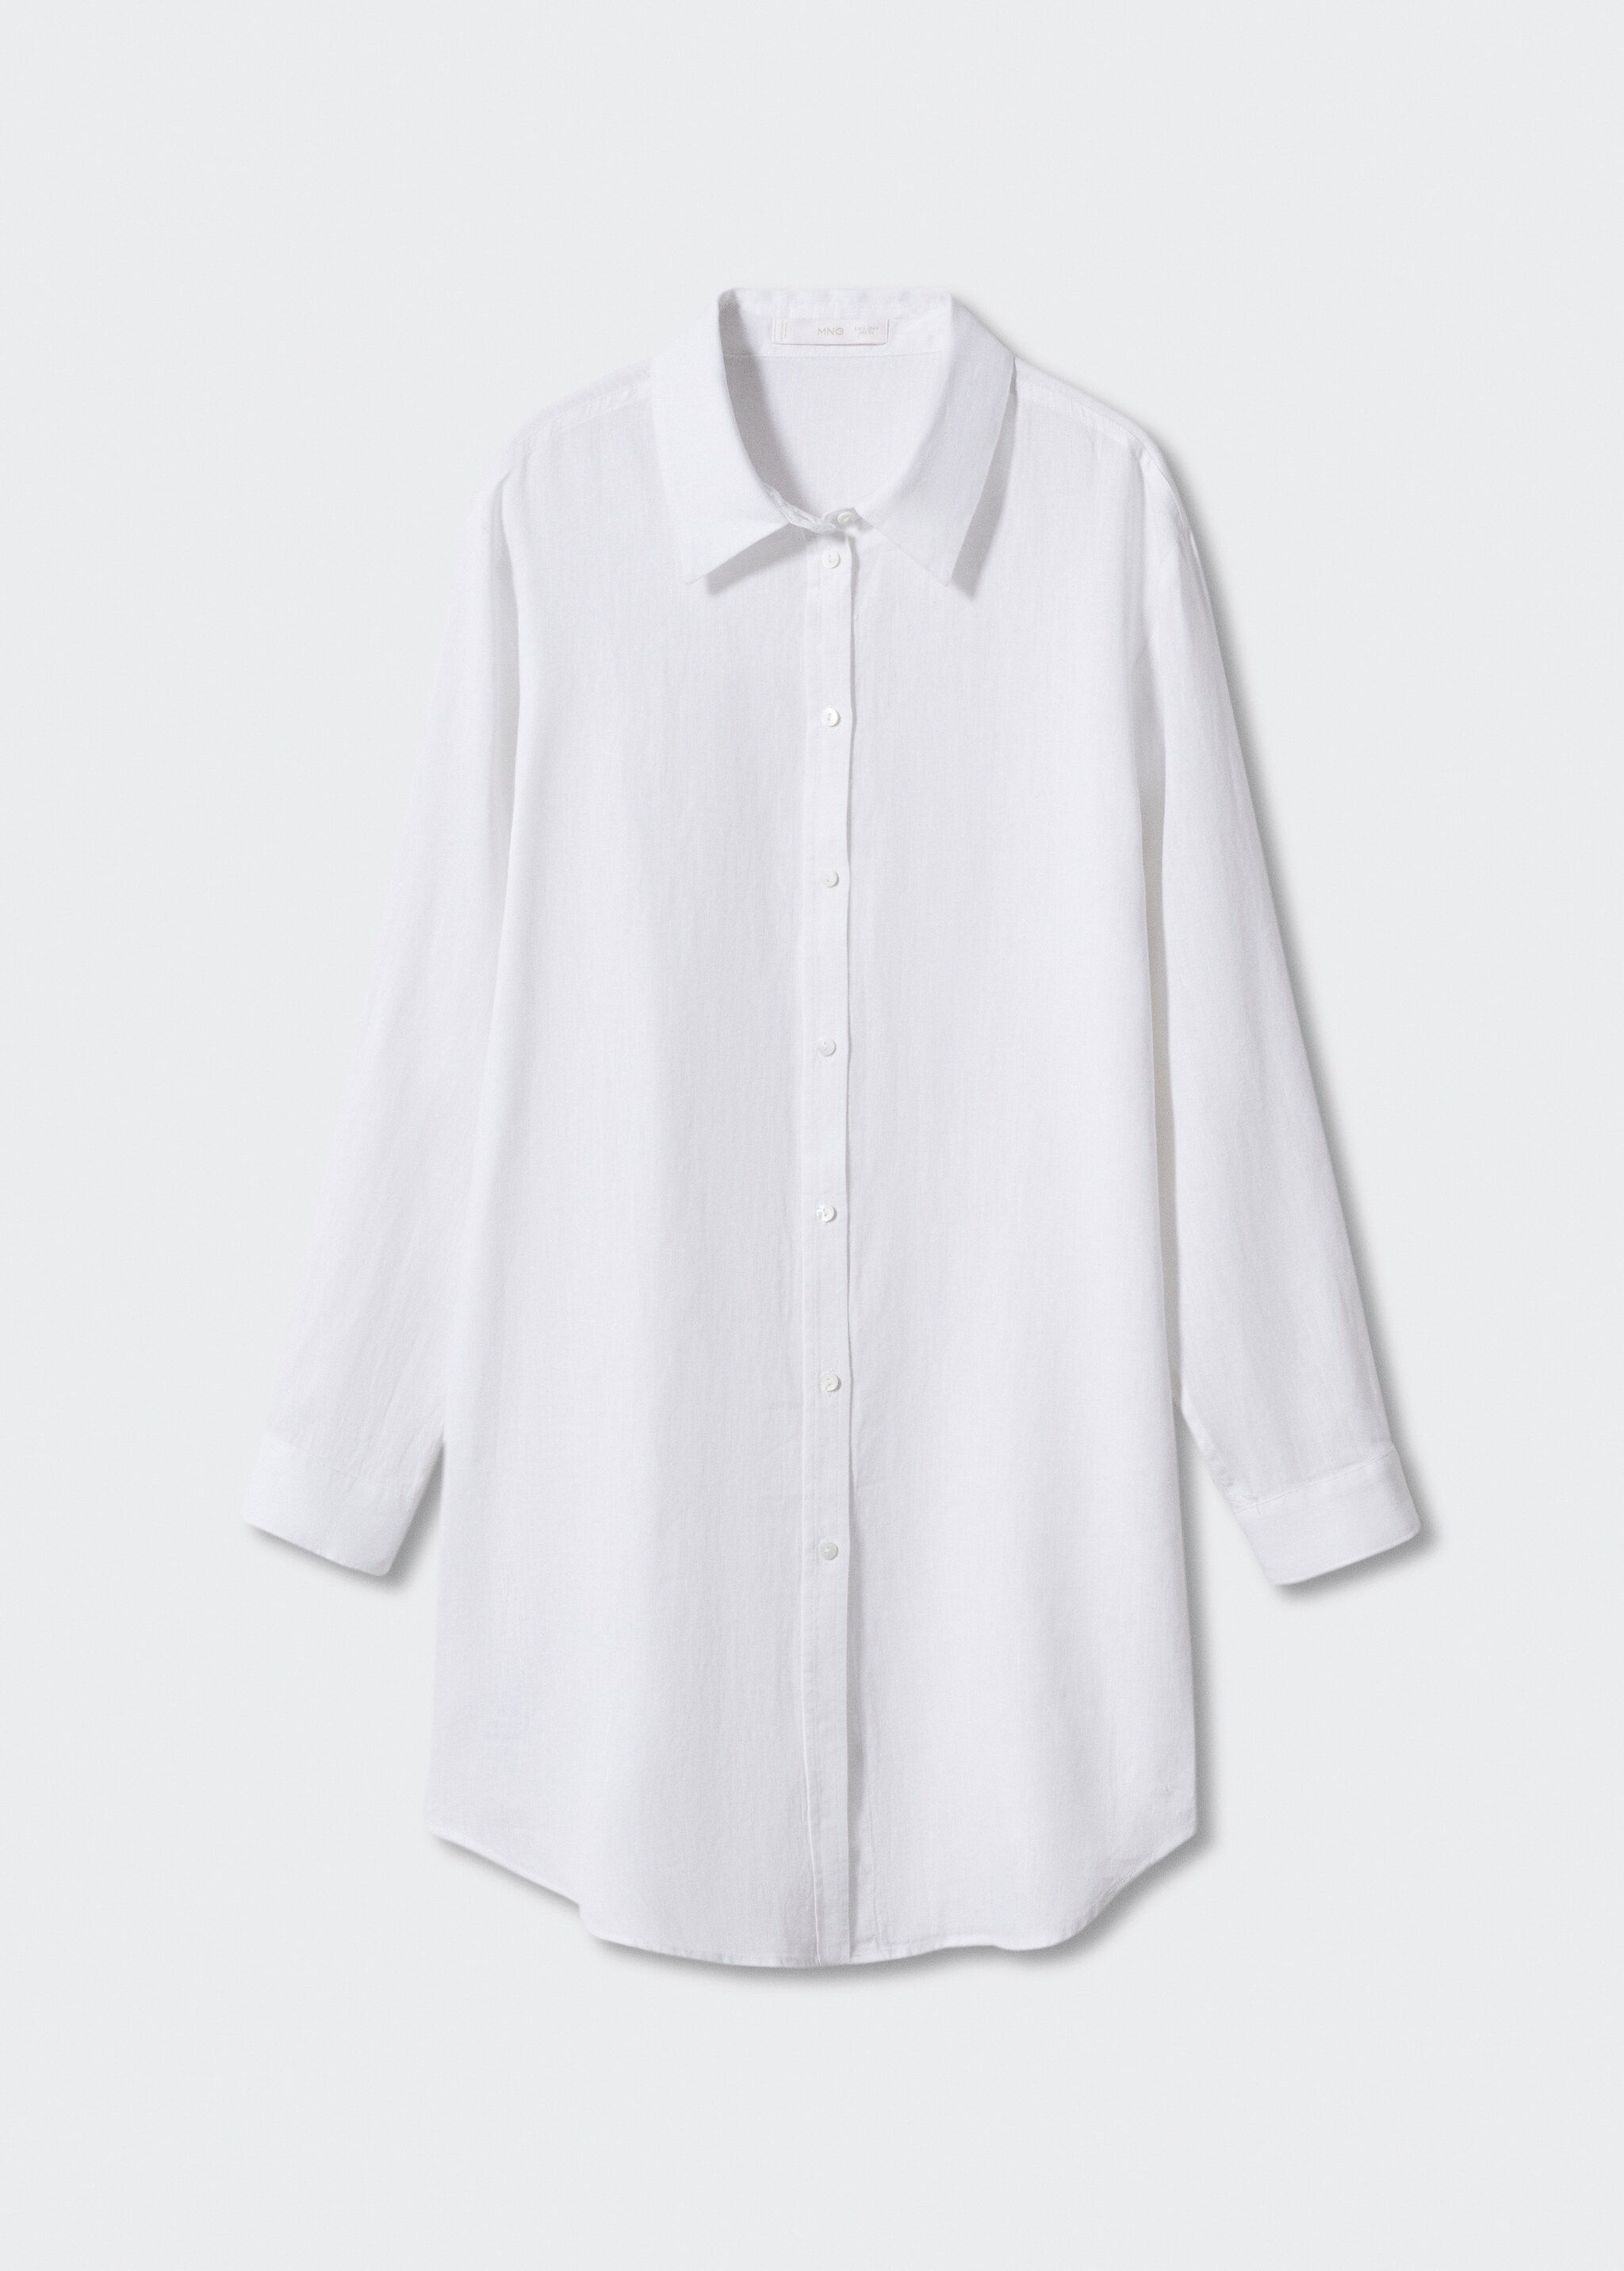 Camisa lino oversize - Artículo sin modelo